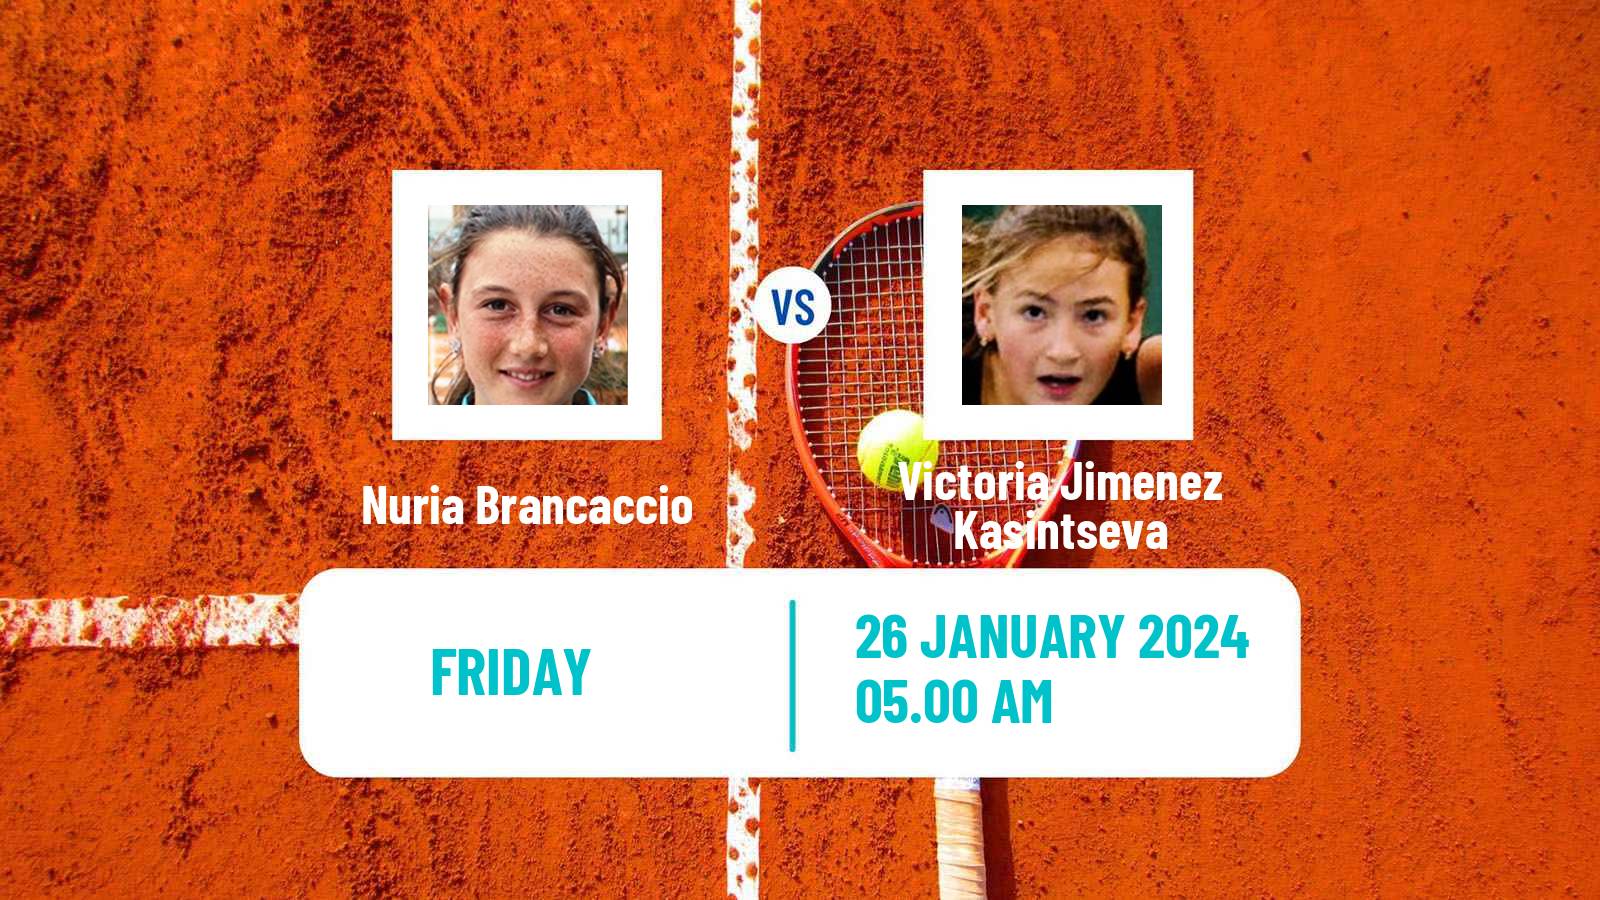 Tennis ITF W35 Monastir 2 Women Nuria Brancaccio - Victoria Jimenez Kasintseva